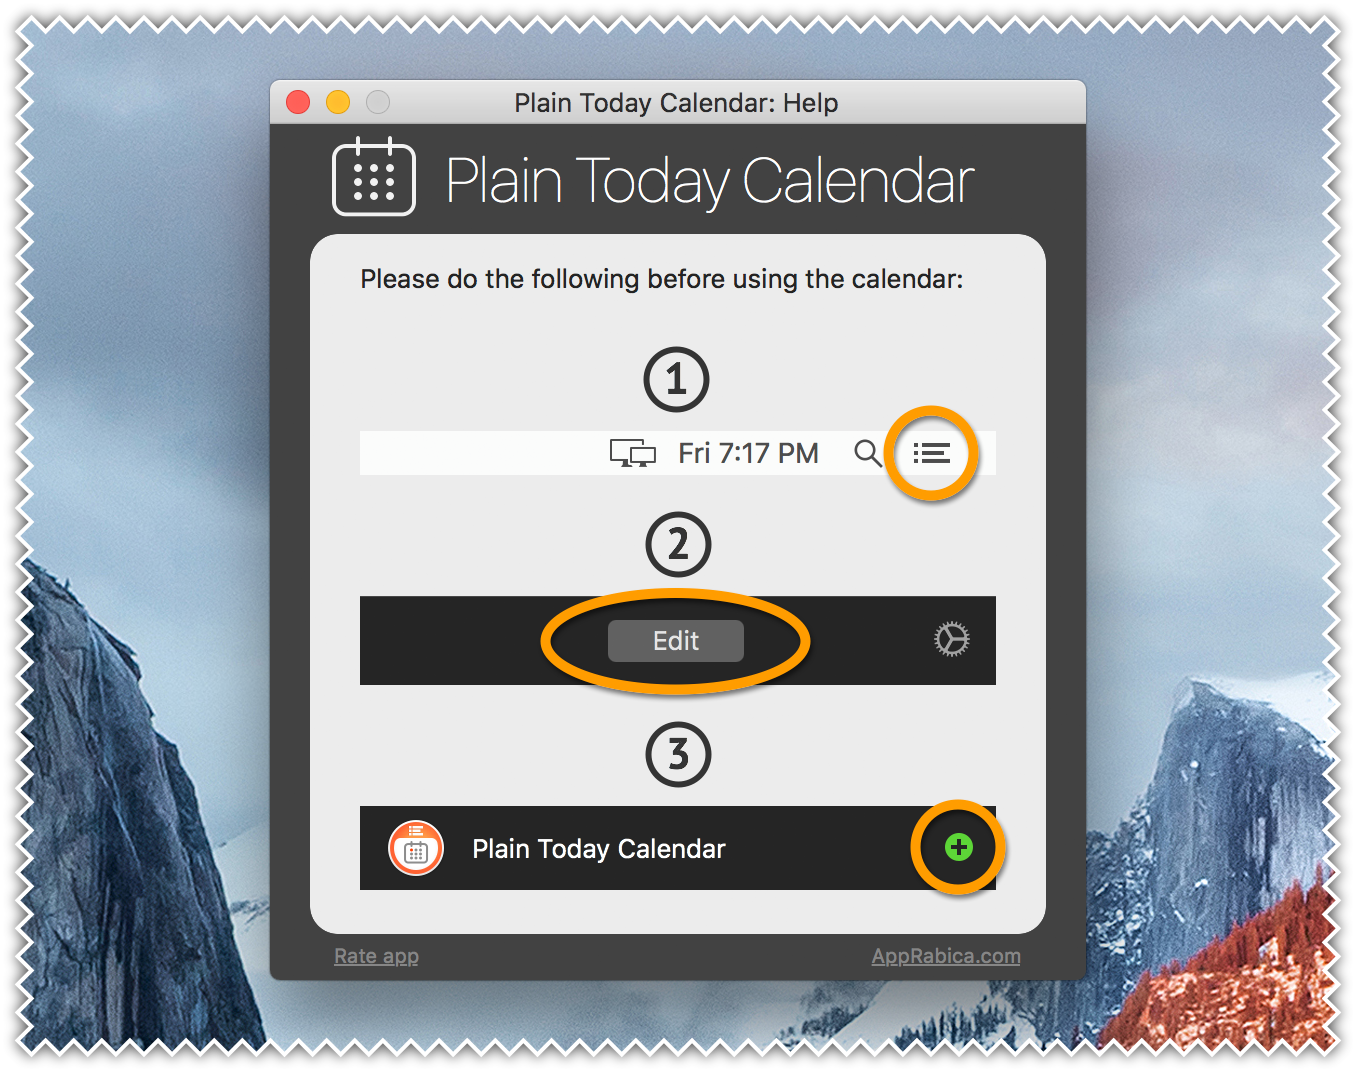 Plain Today Calendar for Mac - Widget Help